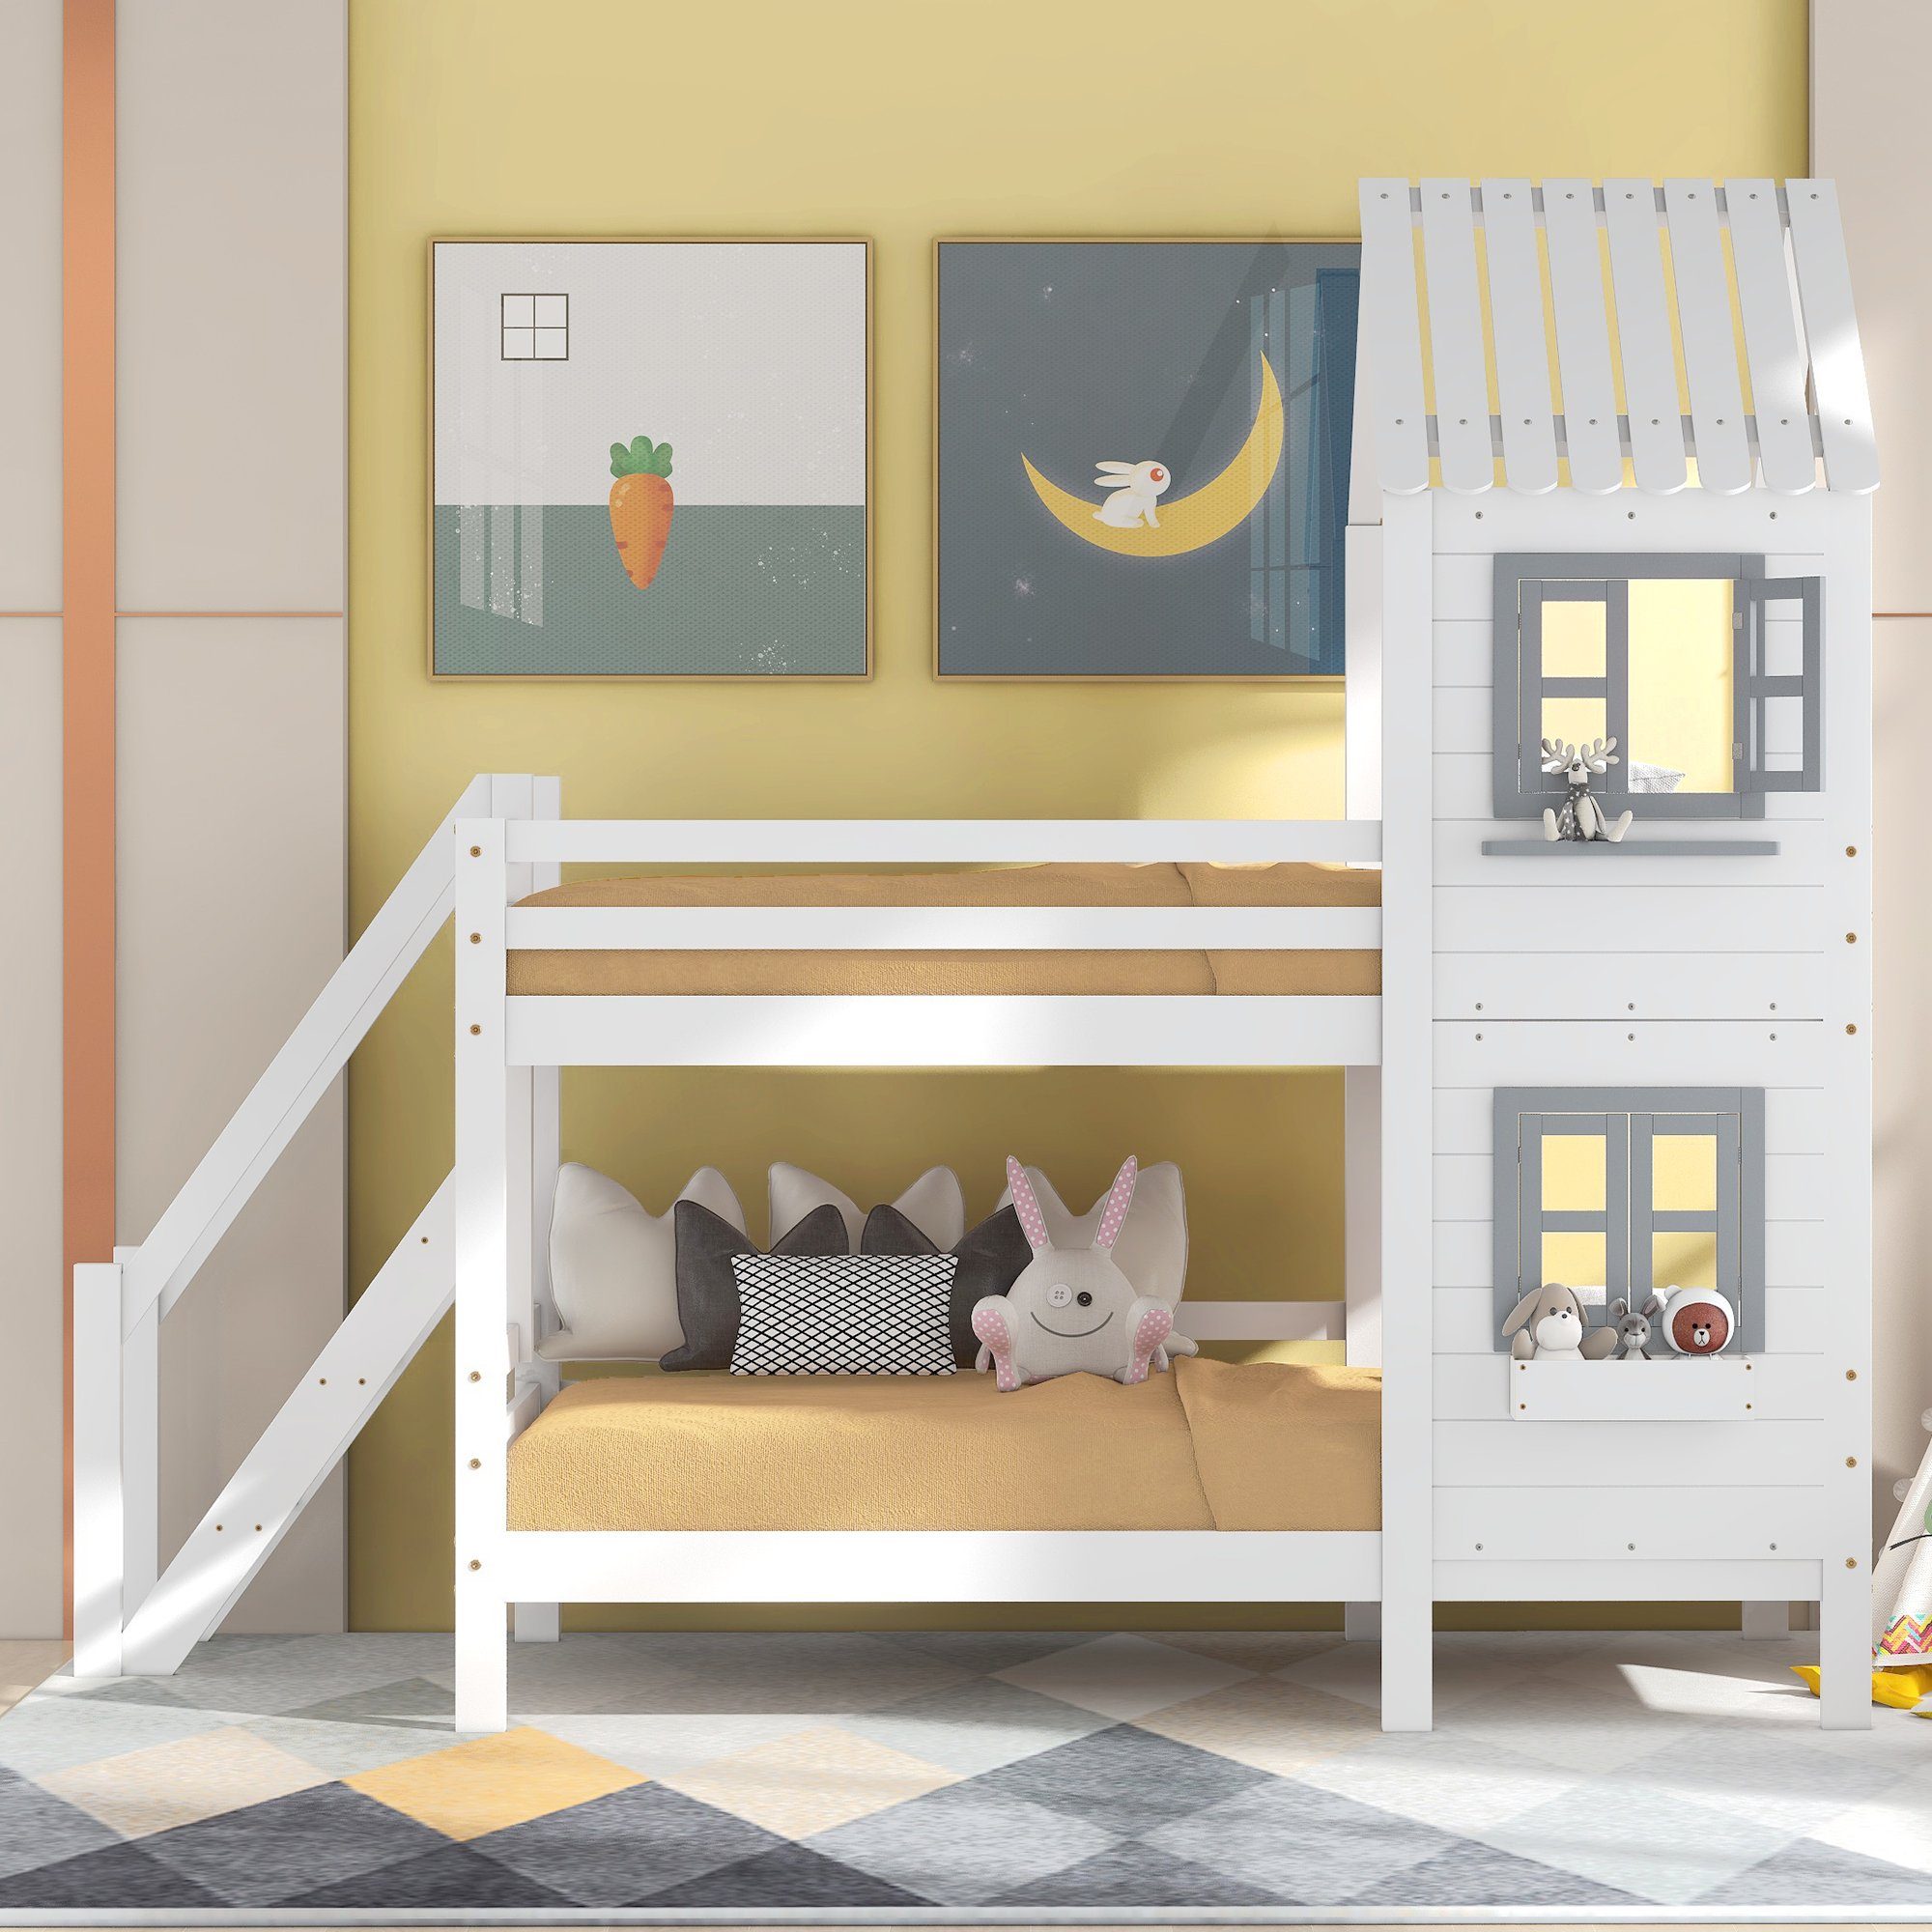 REDOM Bett (mit Fallschutz 90x200cm, Hausbett, Etagenbett Ohne weiß Gitter), Kinderbett Matratze und